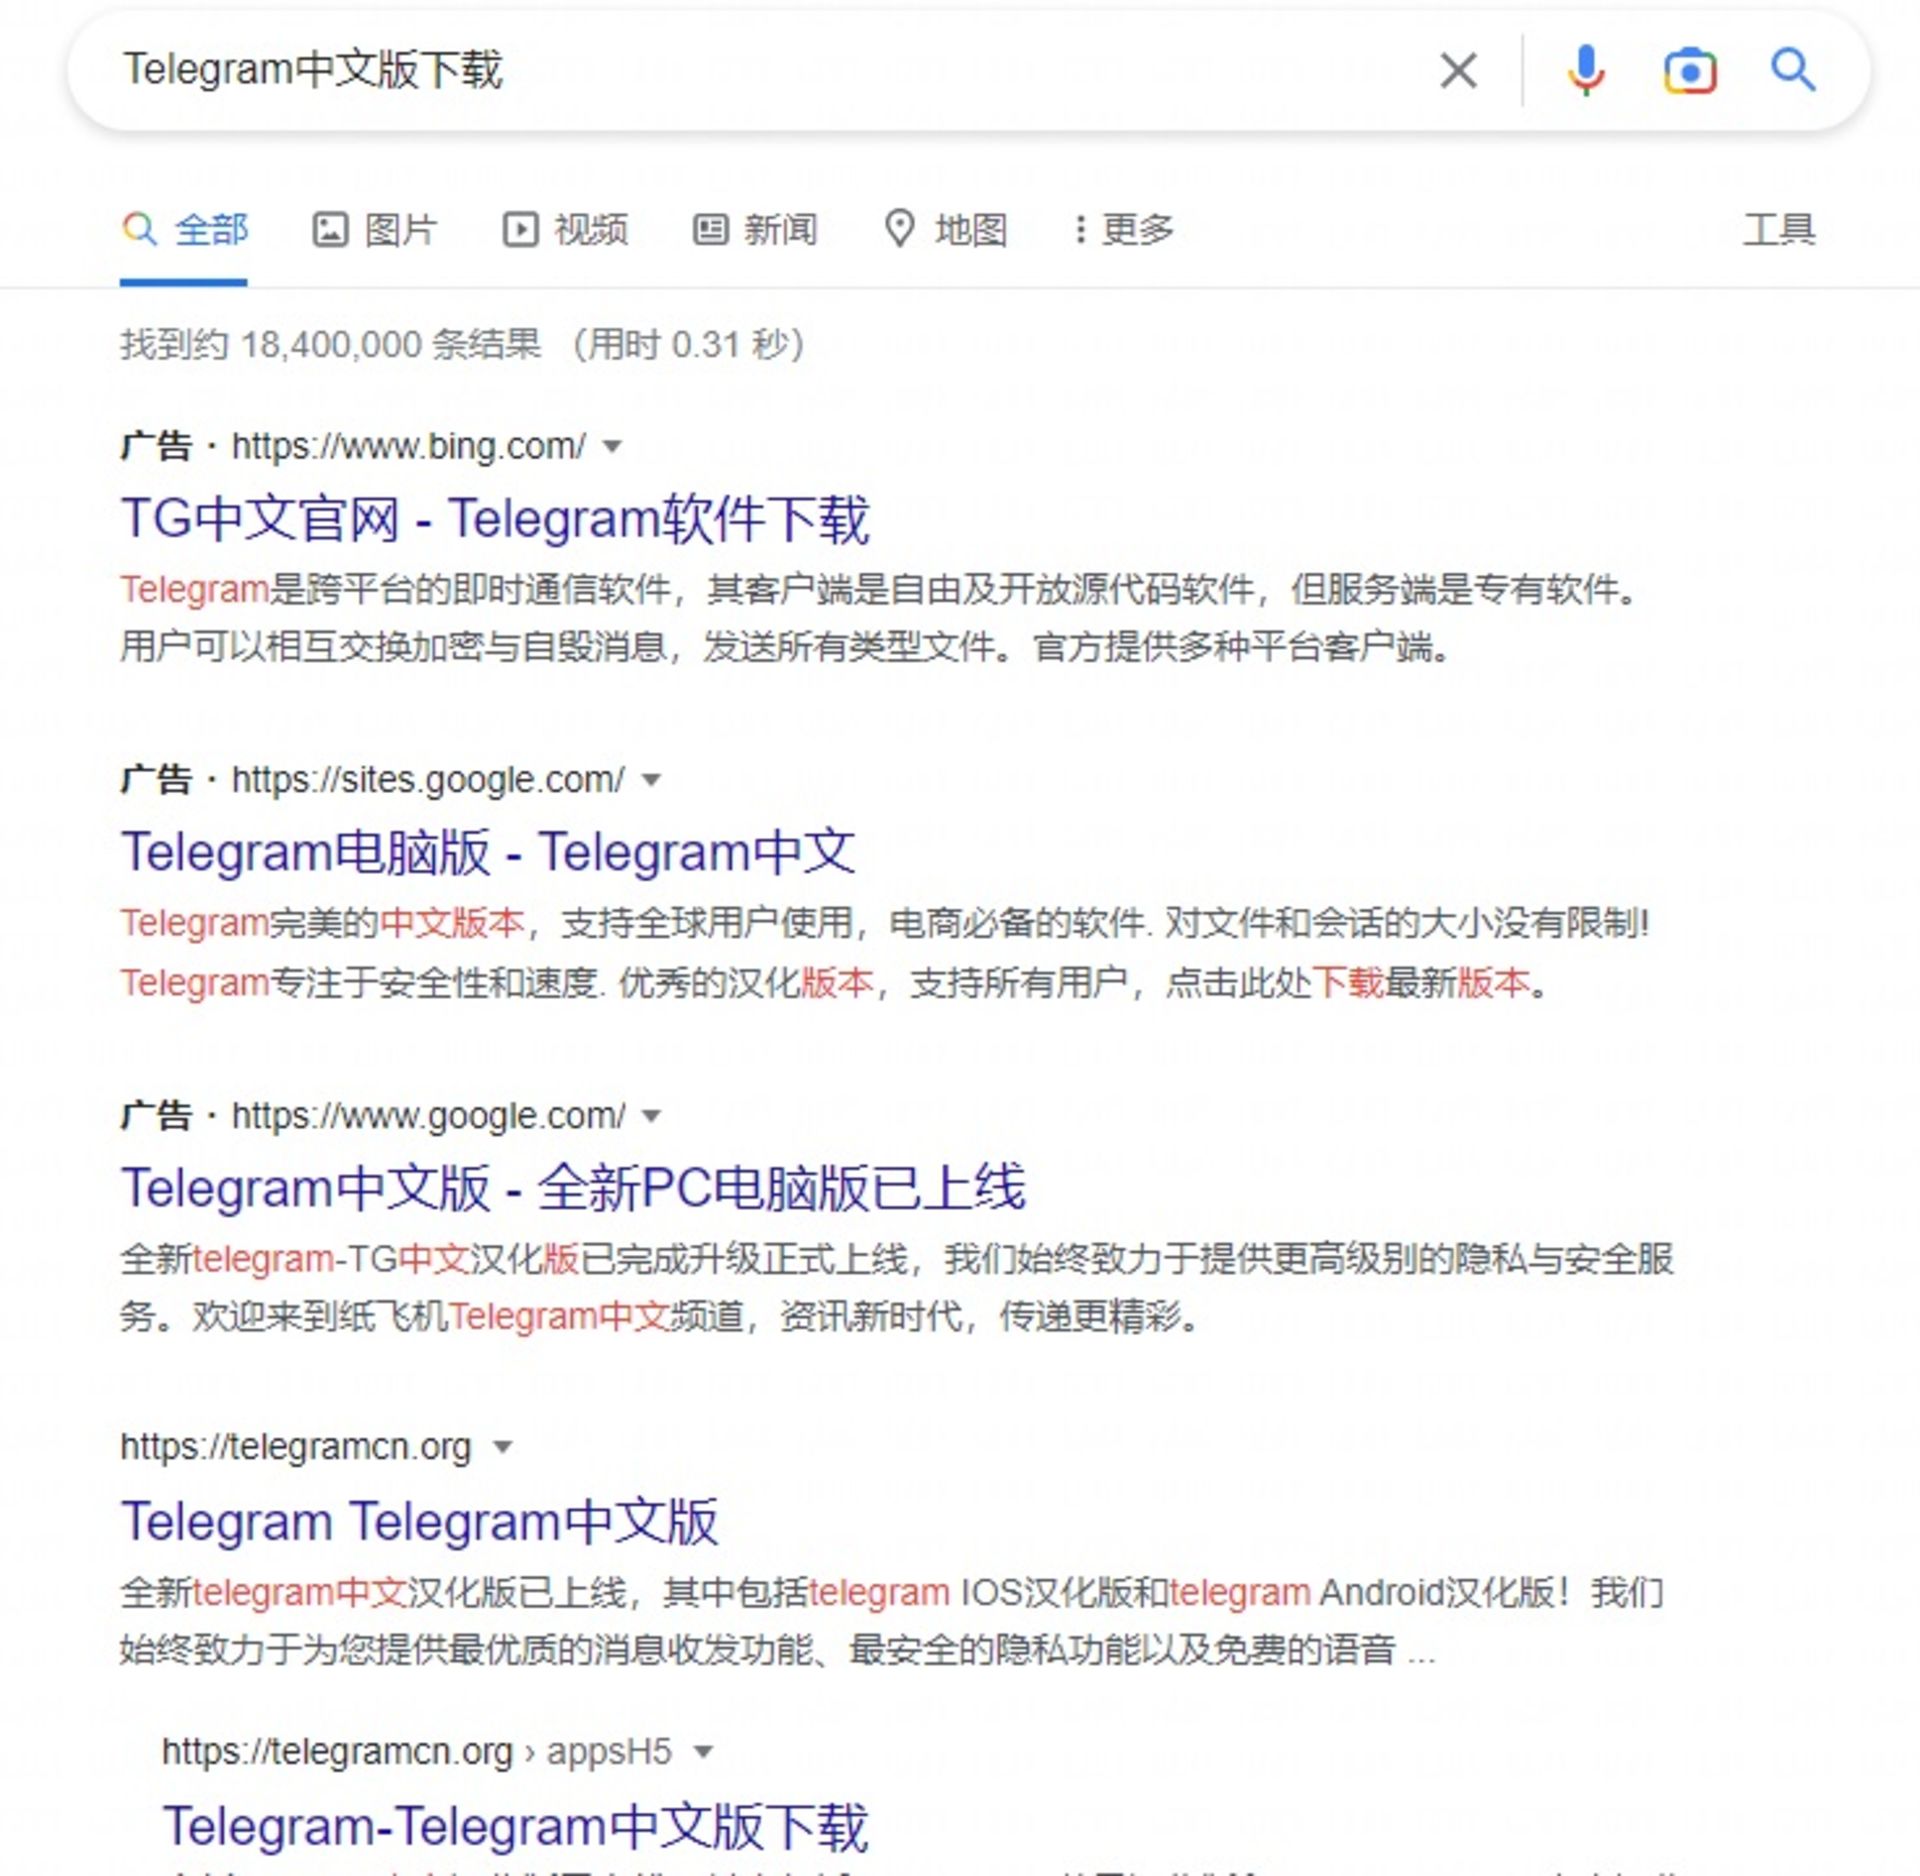 نتیجه جستوجوی گوگل برای تلگرام چینی